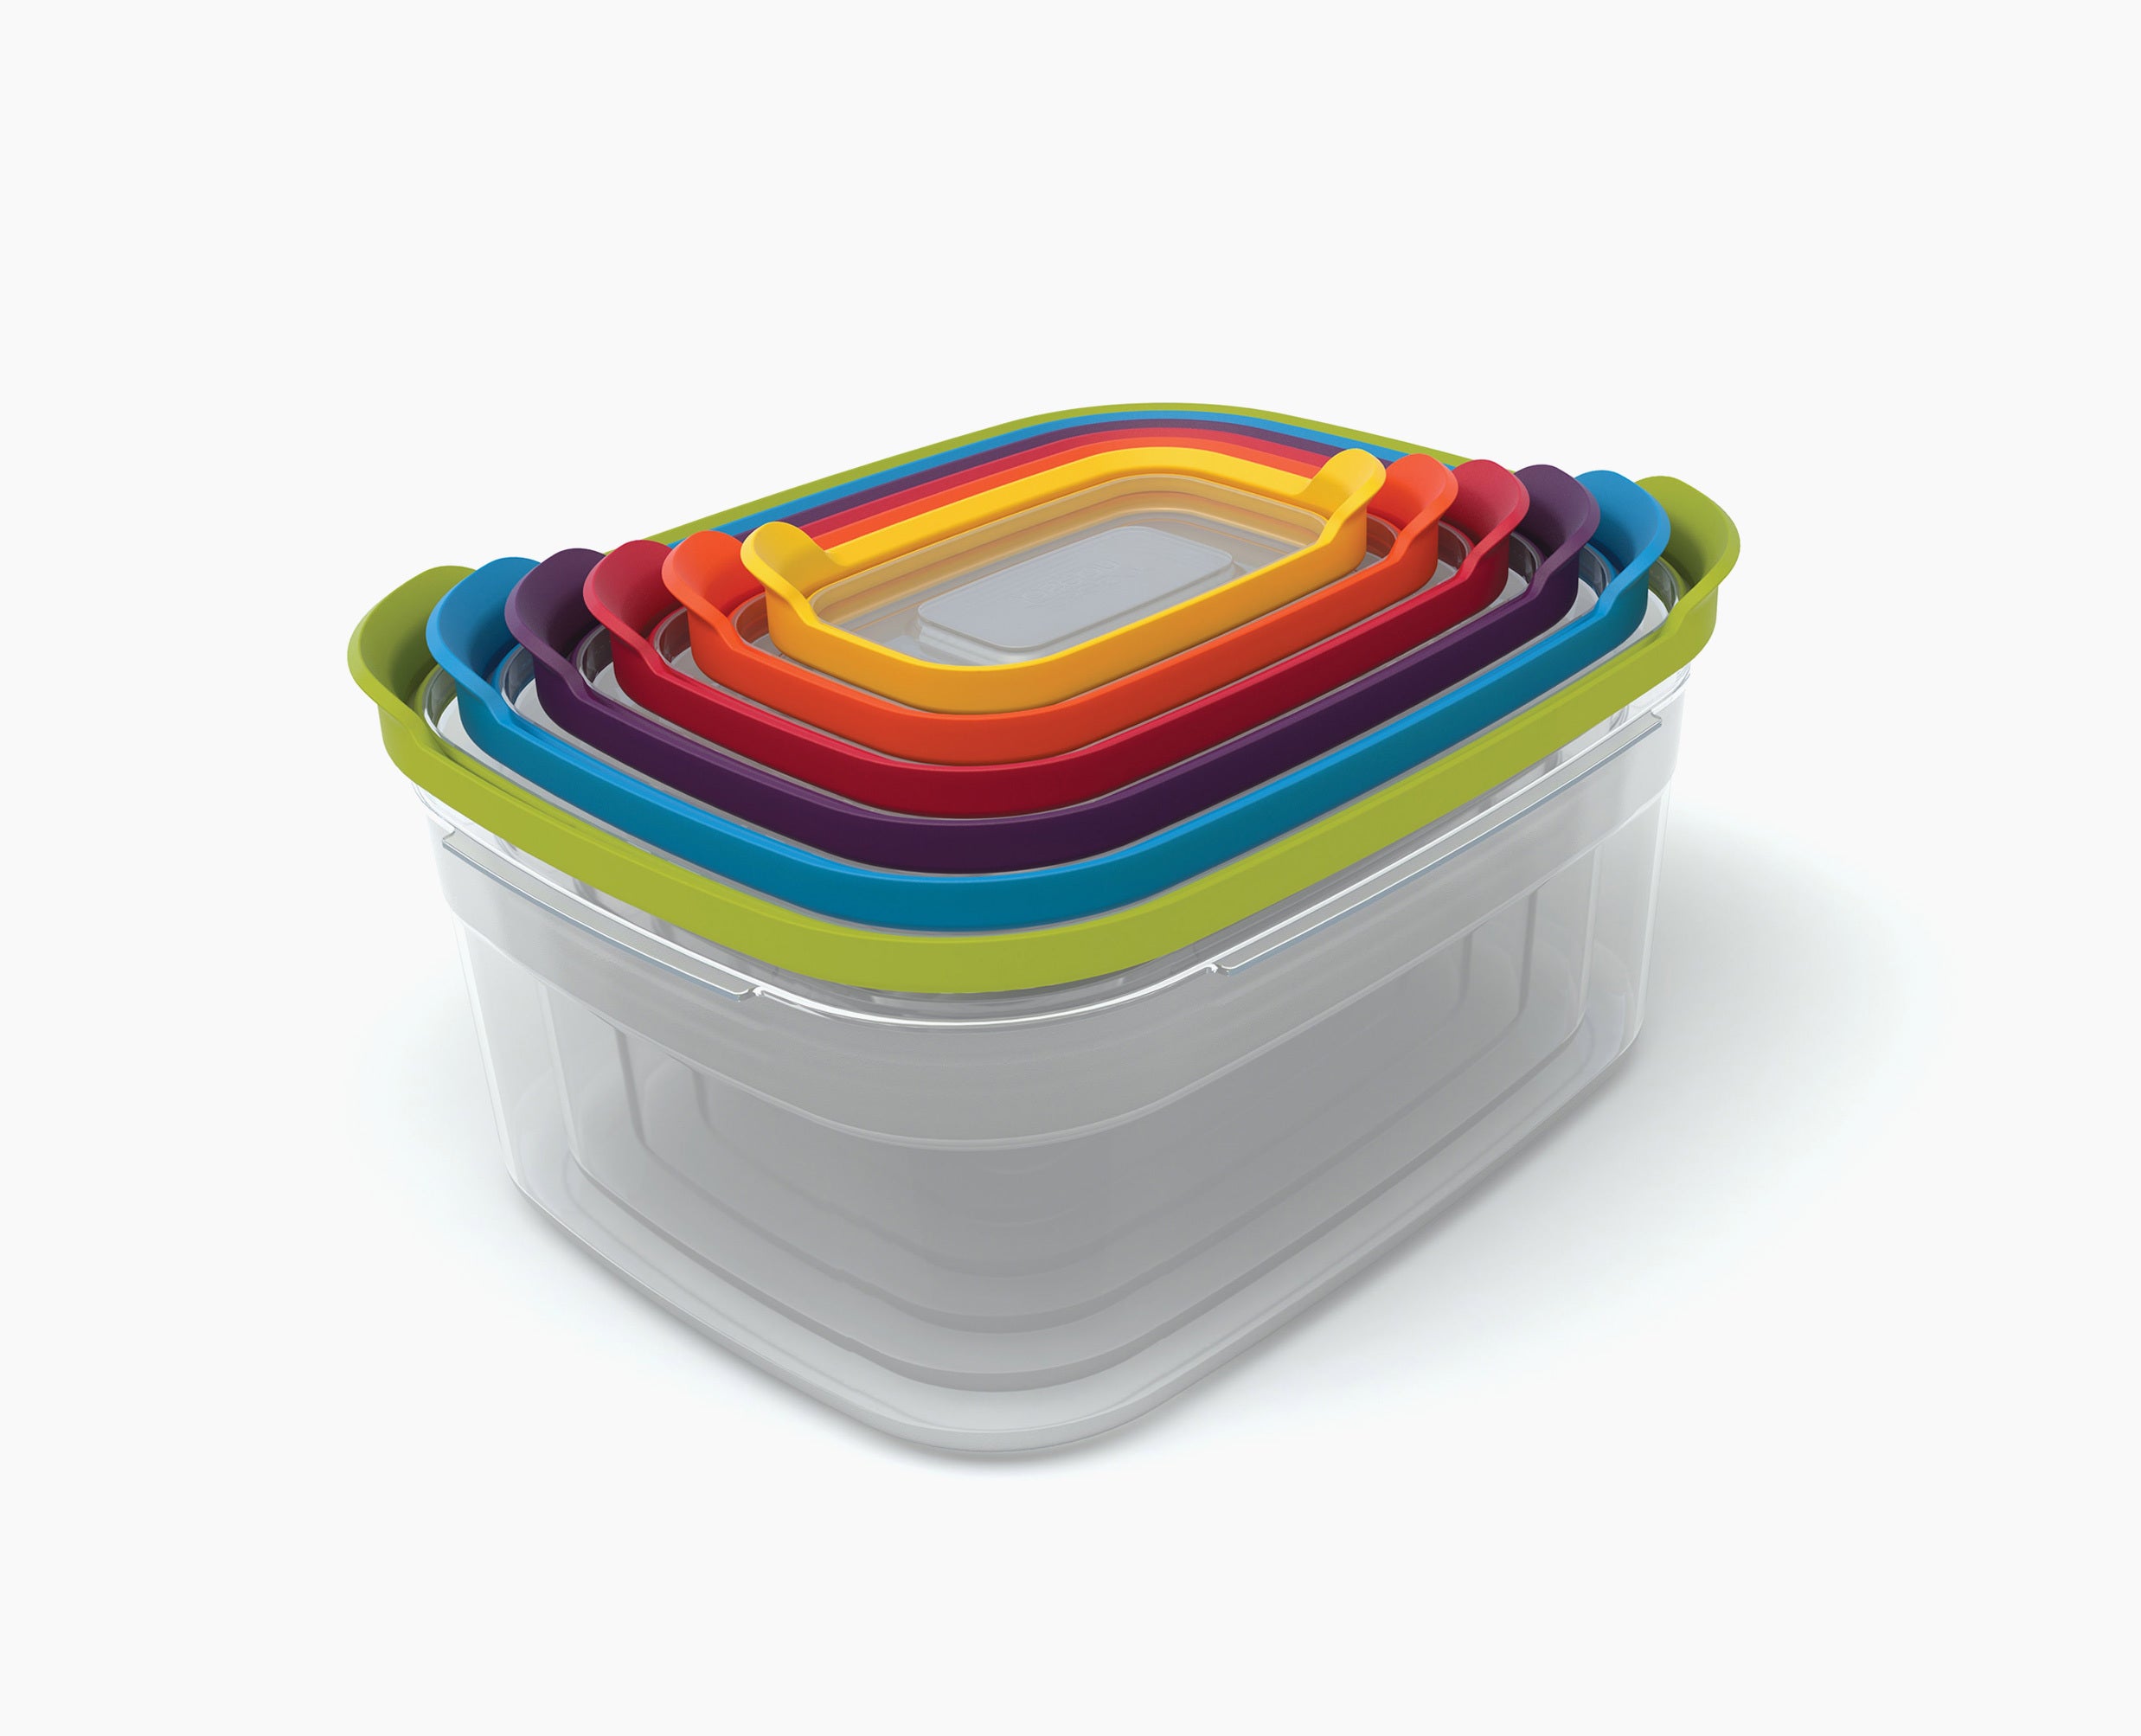 14 pc Nesting Food Storage Set 7 Containers + Lids Plastic Multi-Color Lids